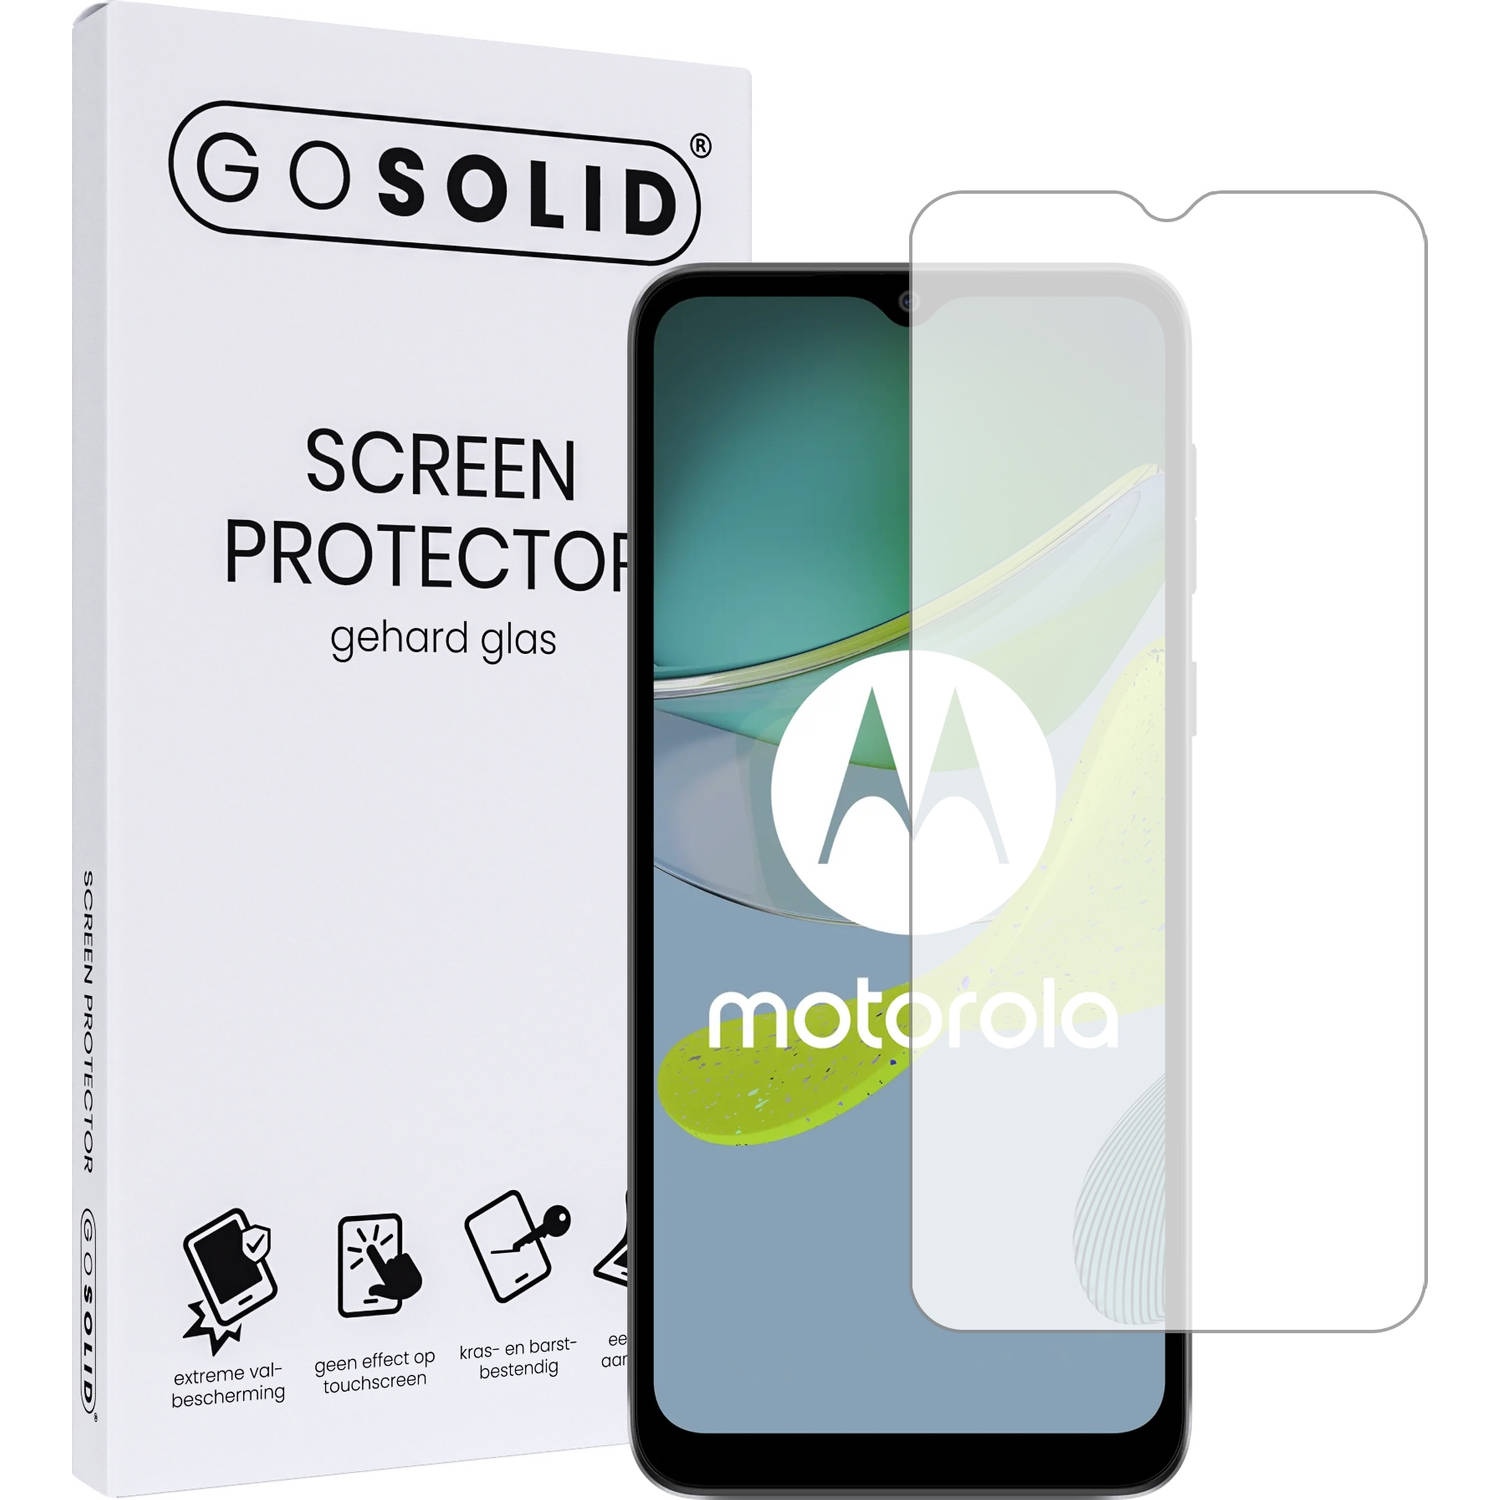 GO SOLID! ® Screenprotector geschikt voor Motorola moto E22 gehard glas